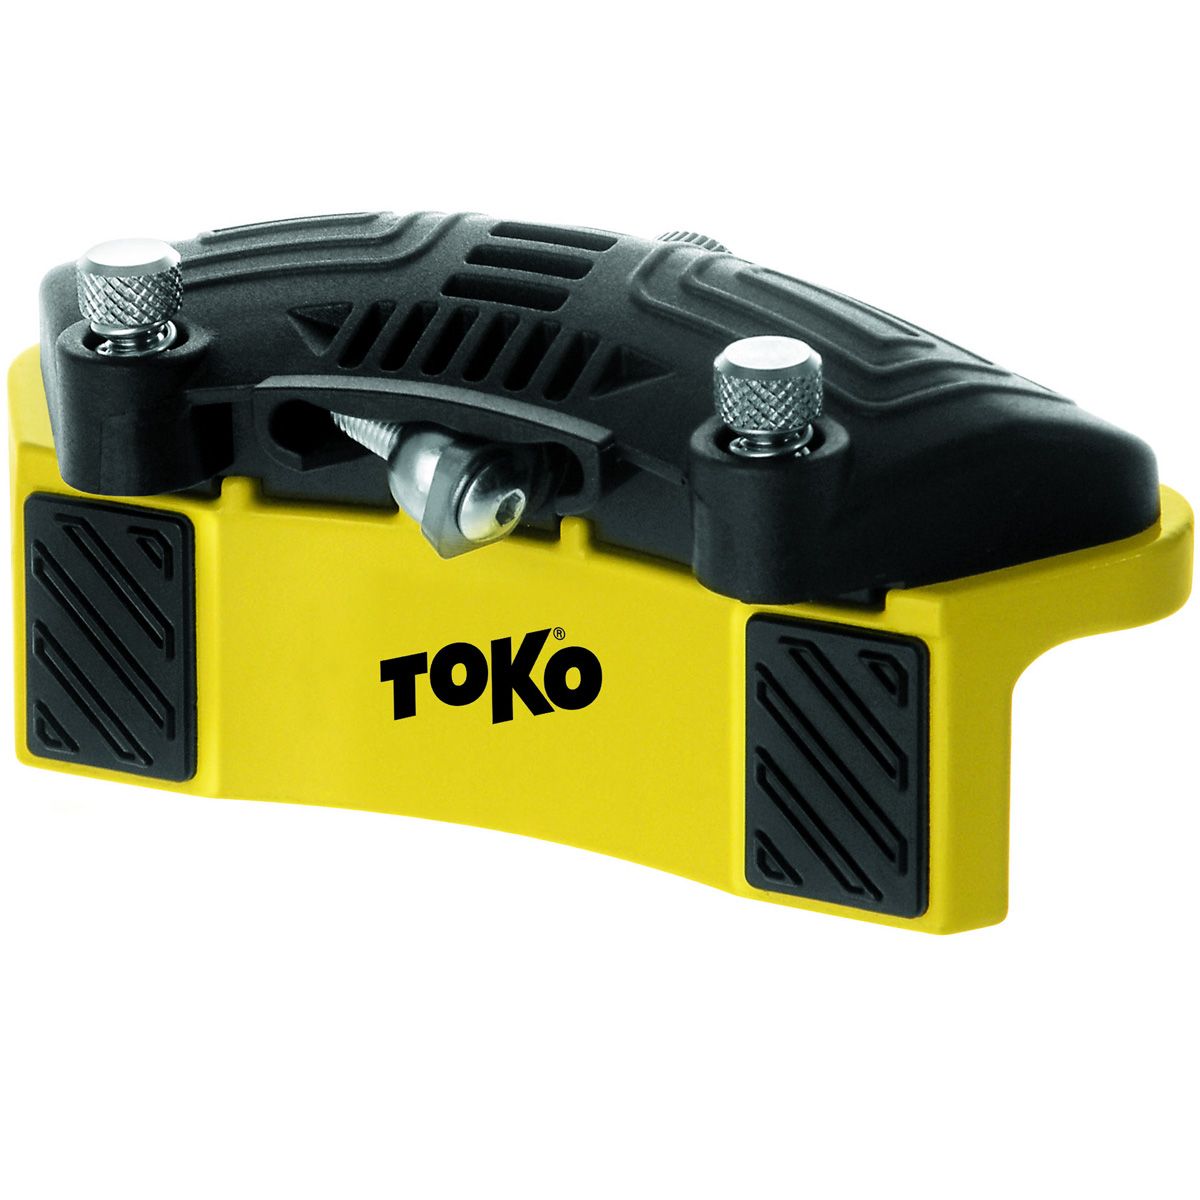 Toko Sidewall Planer Pro von TOKO